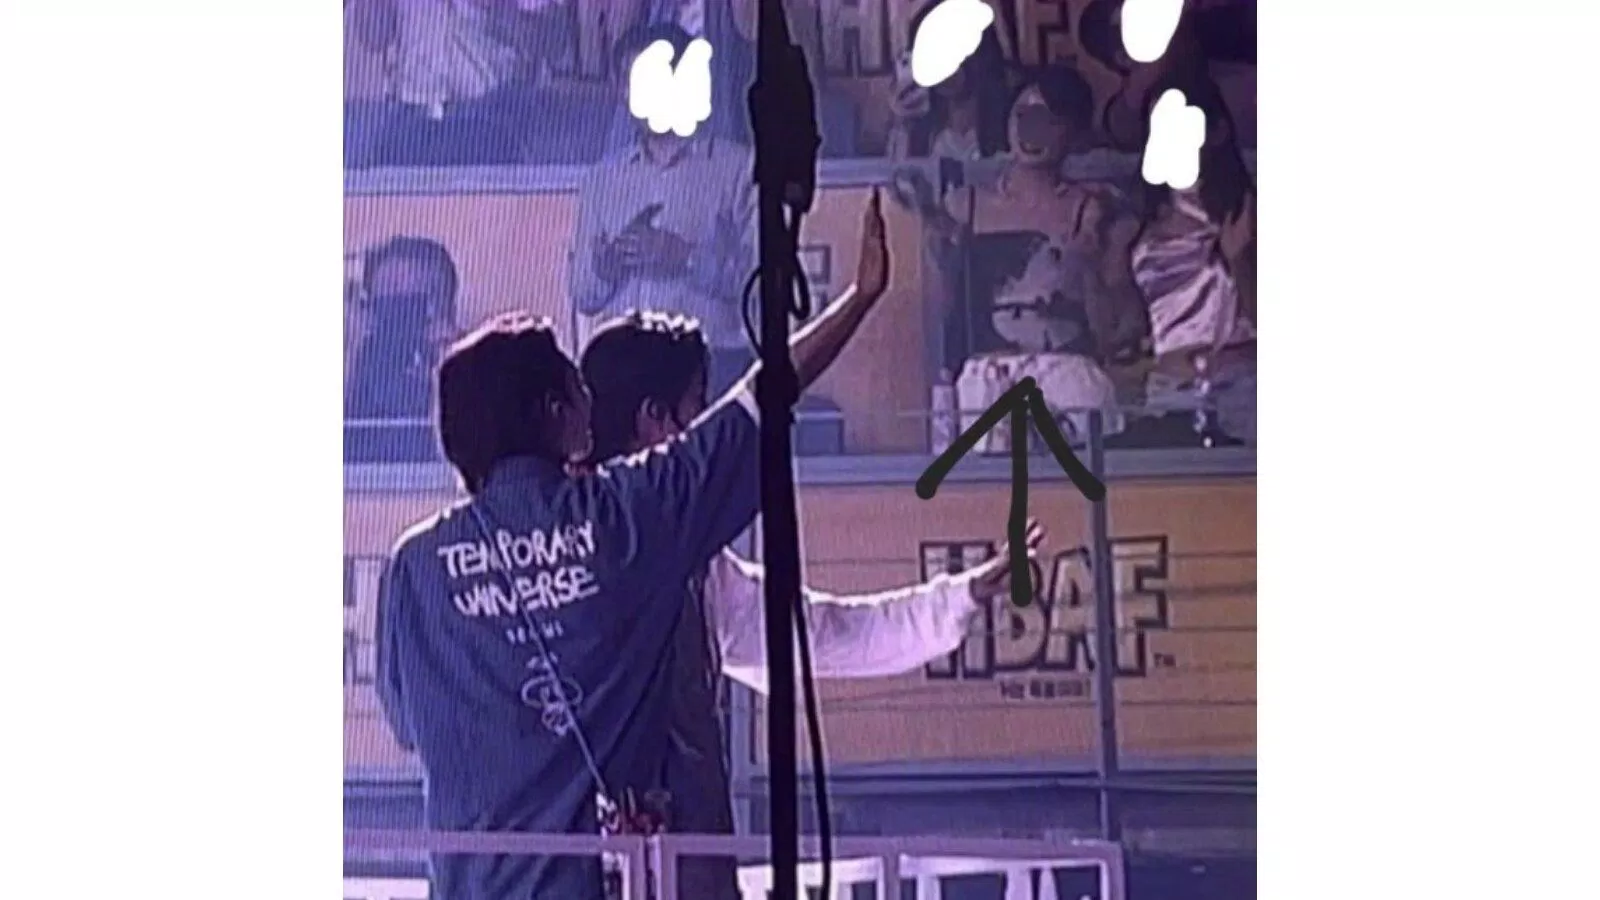 Joshua vẫy tay với bạn gái trong concert (nguồn ảnh: Internet)